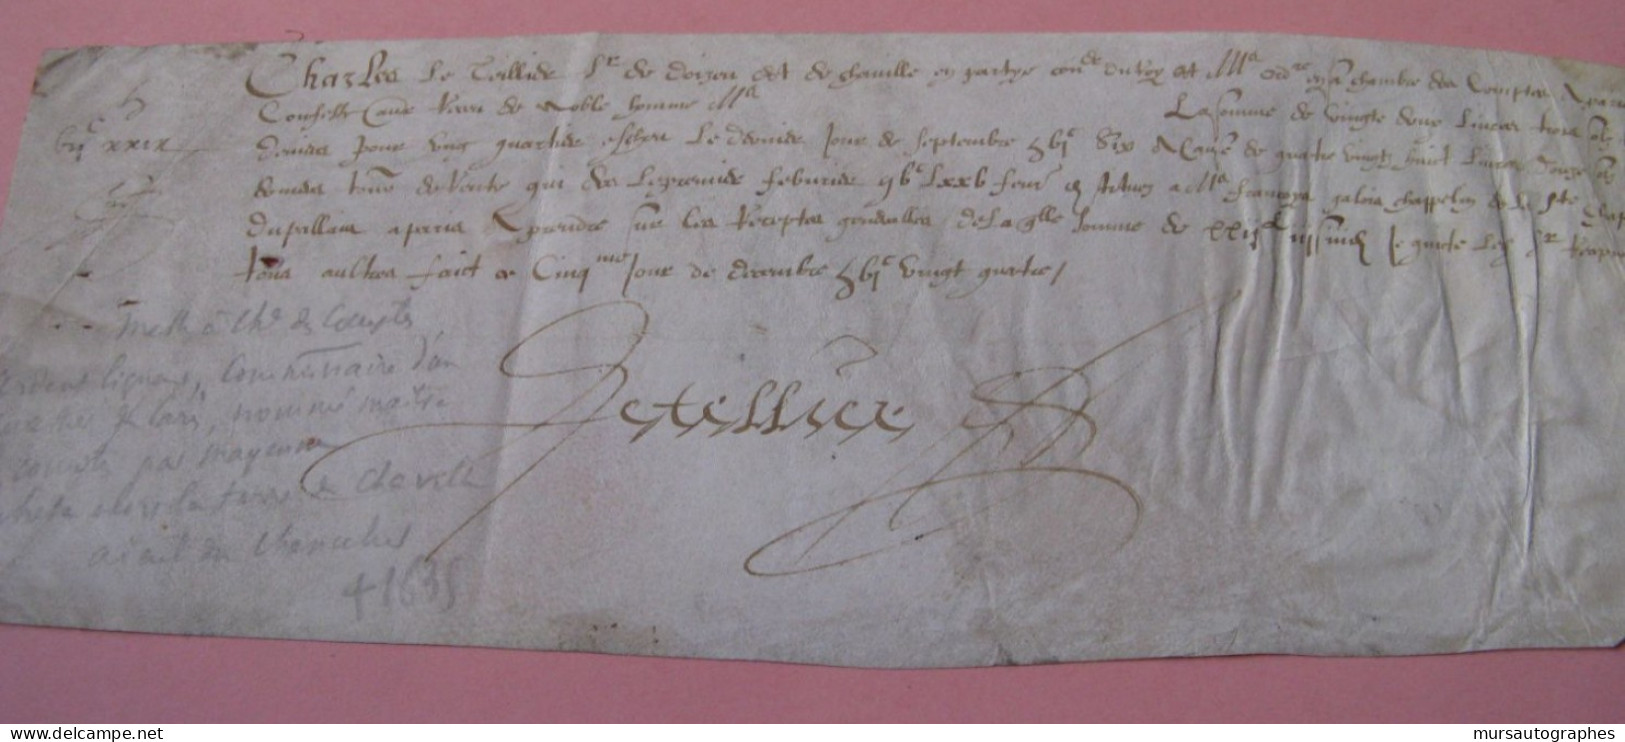 CHARLES LE TELLIER Autographe Signé 1624 LIGUEUR COMMISSAIRE PARIS MAITRE COMPTES - Personnages Historiques